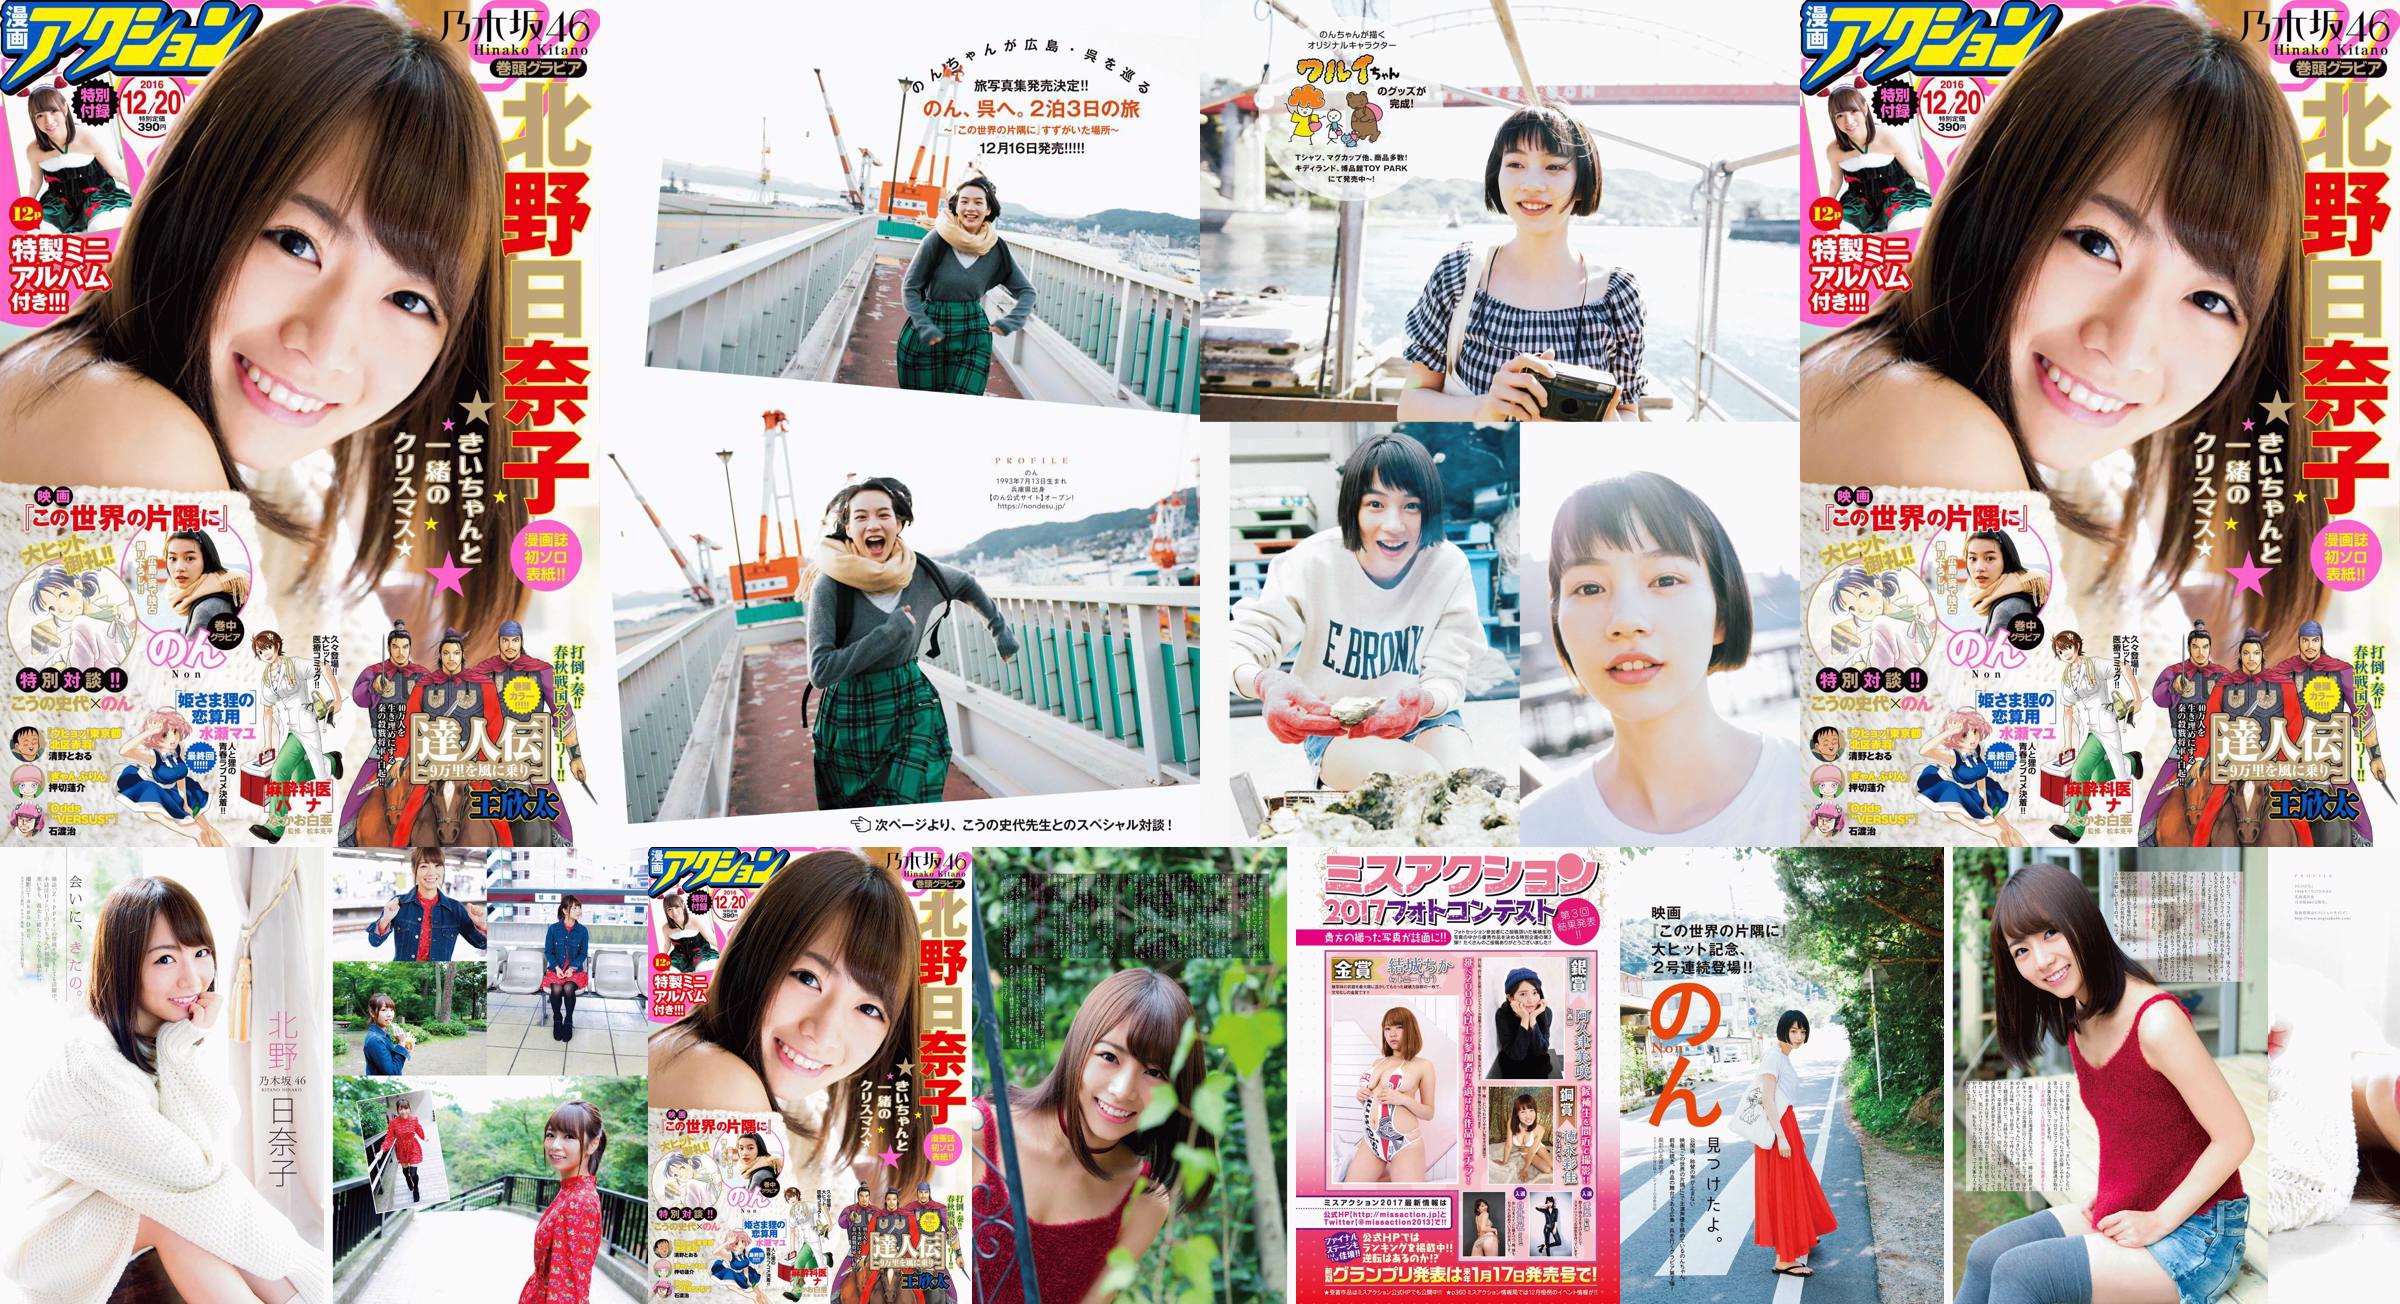 [Manga Action] Kitano Hinako のん 2016 No.24 Photo Magazine No.4ff0bb Page 12